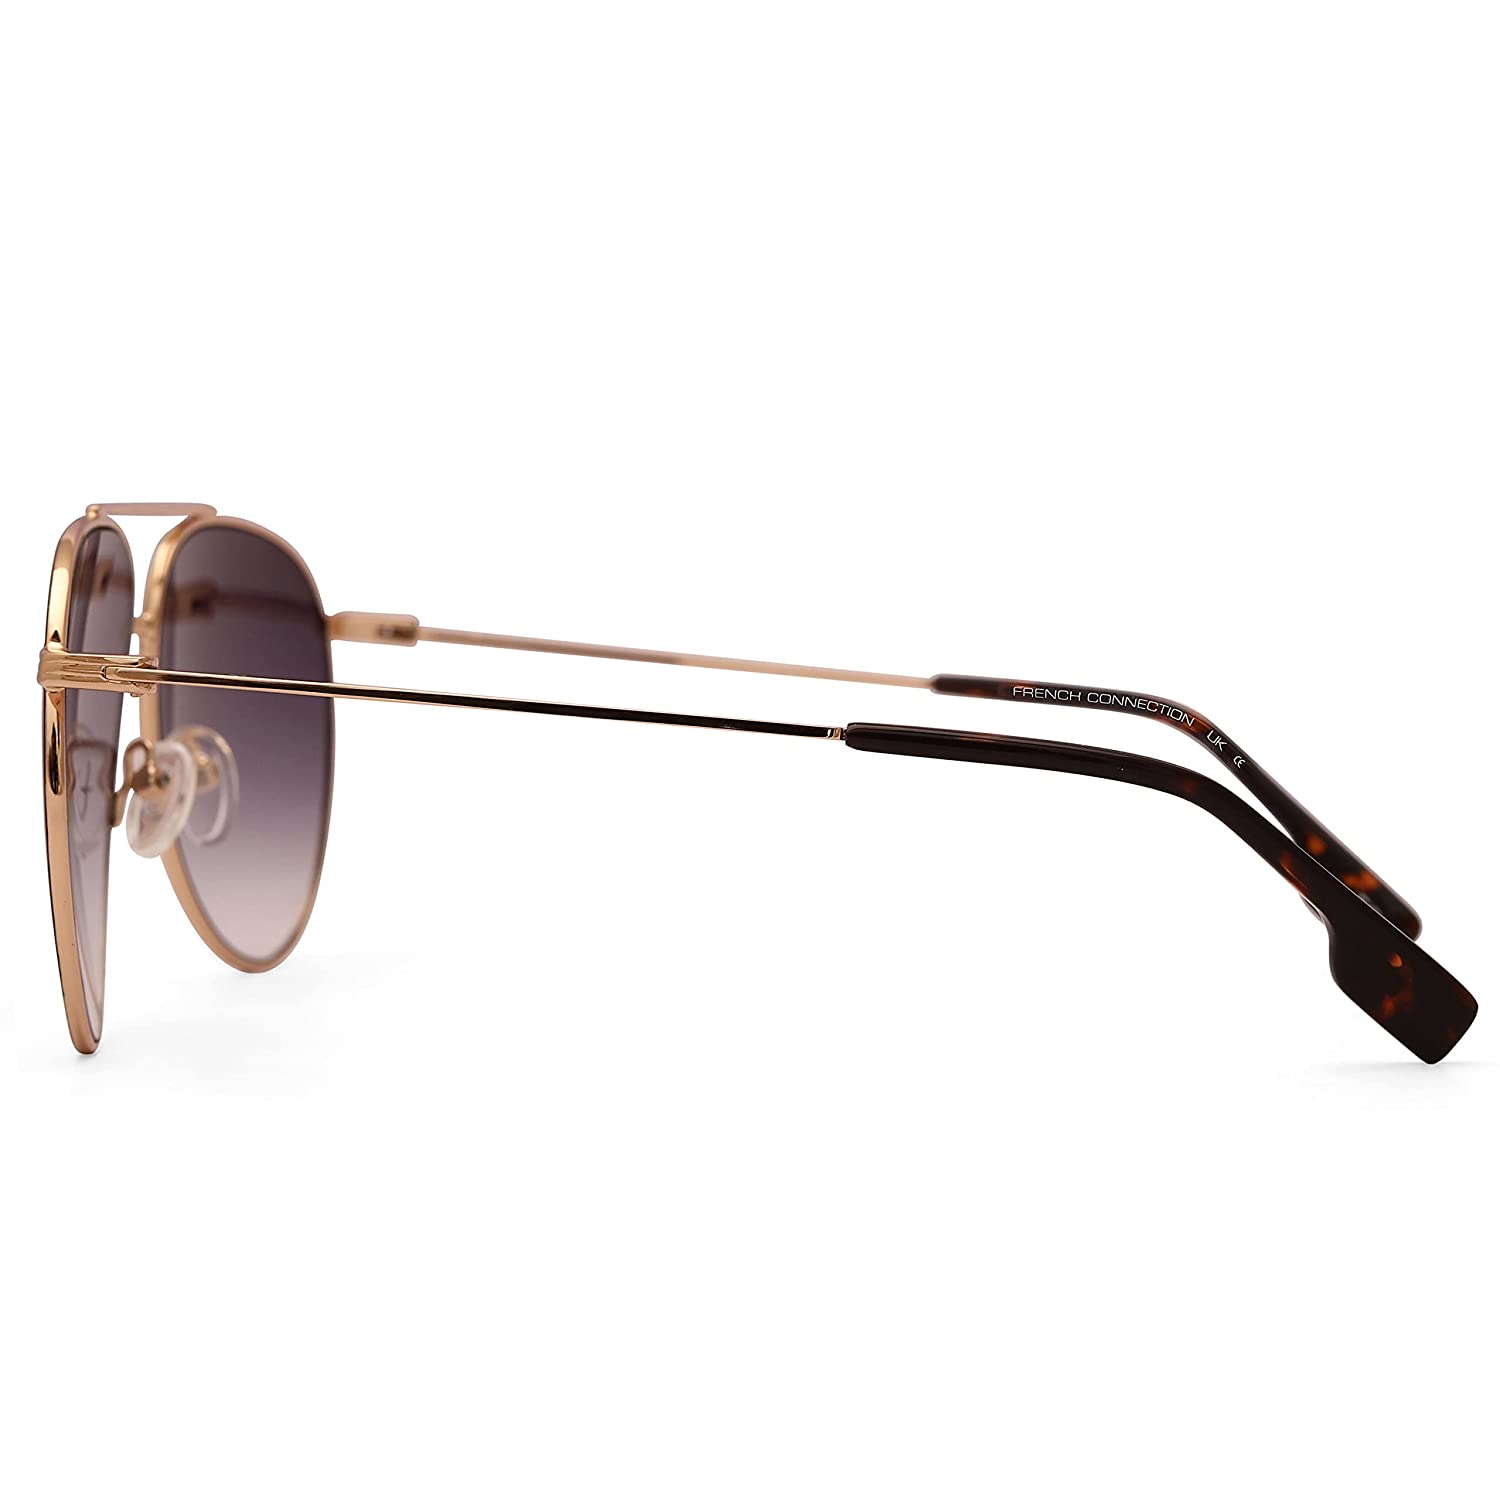 Dark Green Gradient Lens Pilot Style Aviators Sunglasses 28bkgr – Glasses  India Online